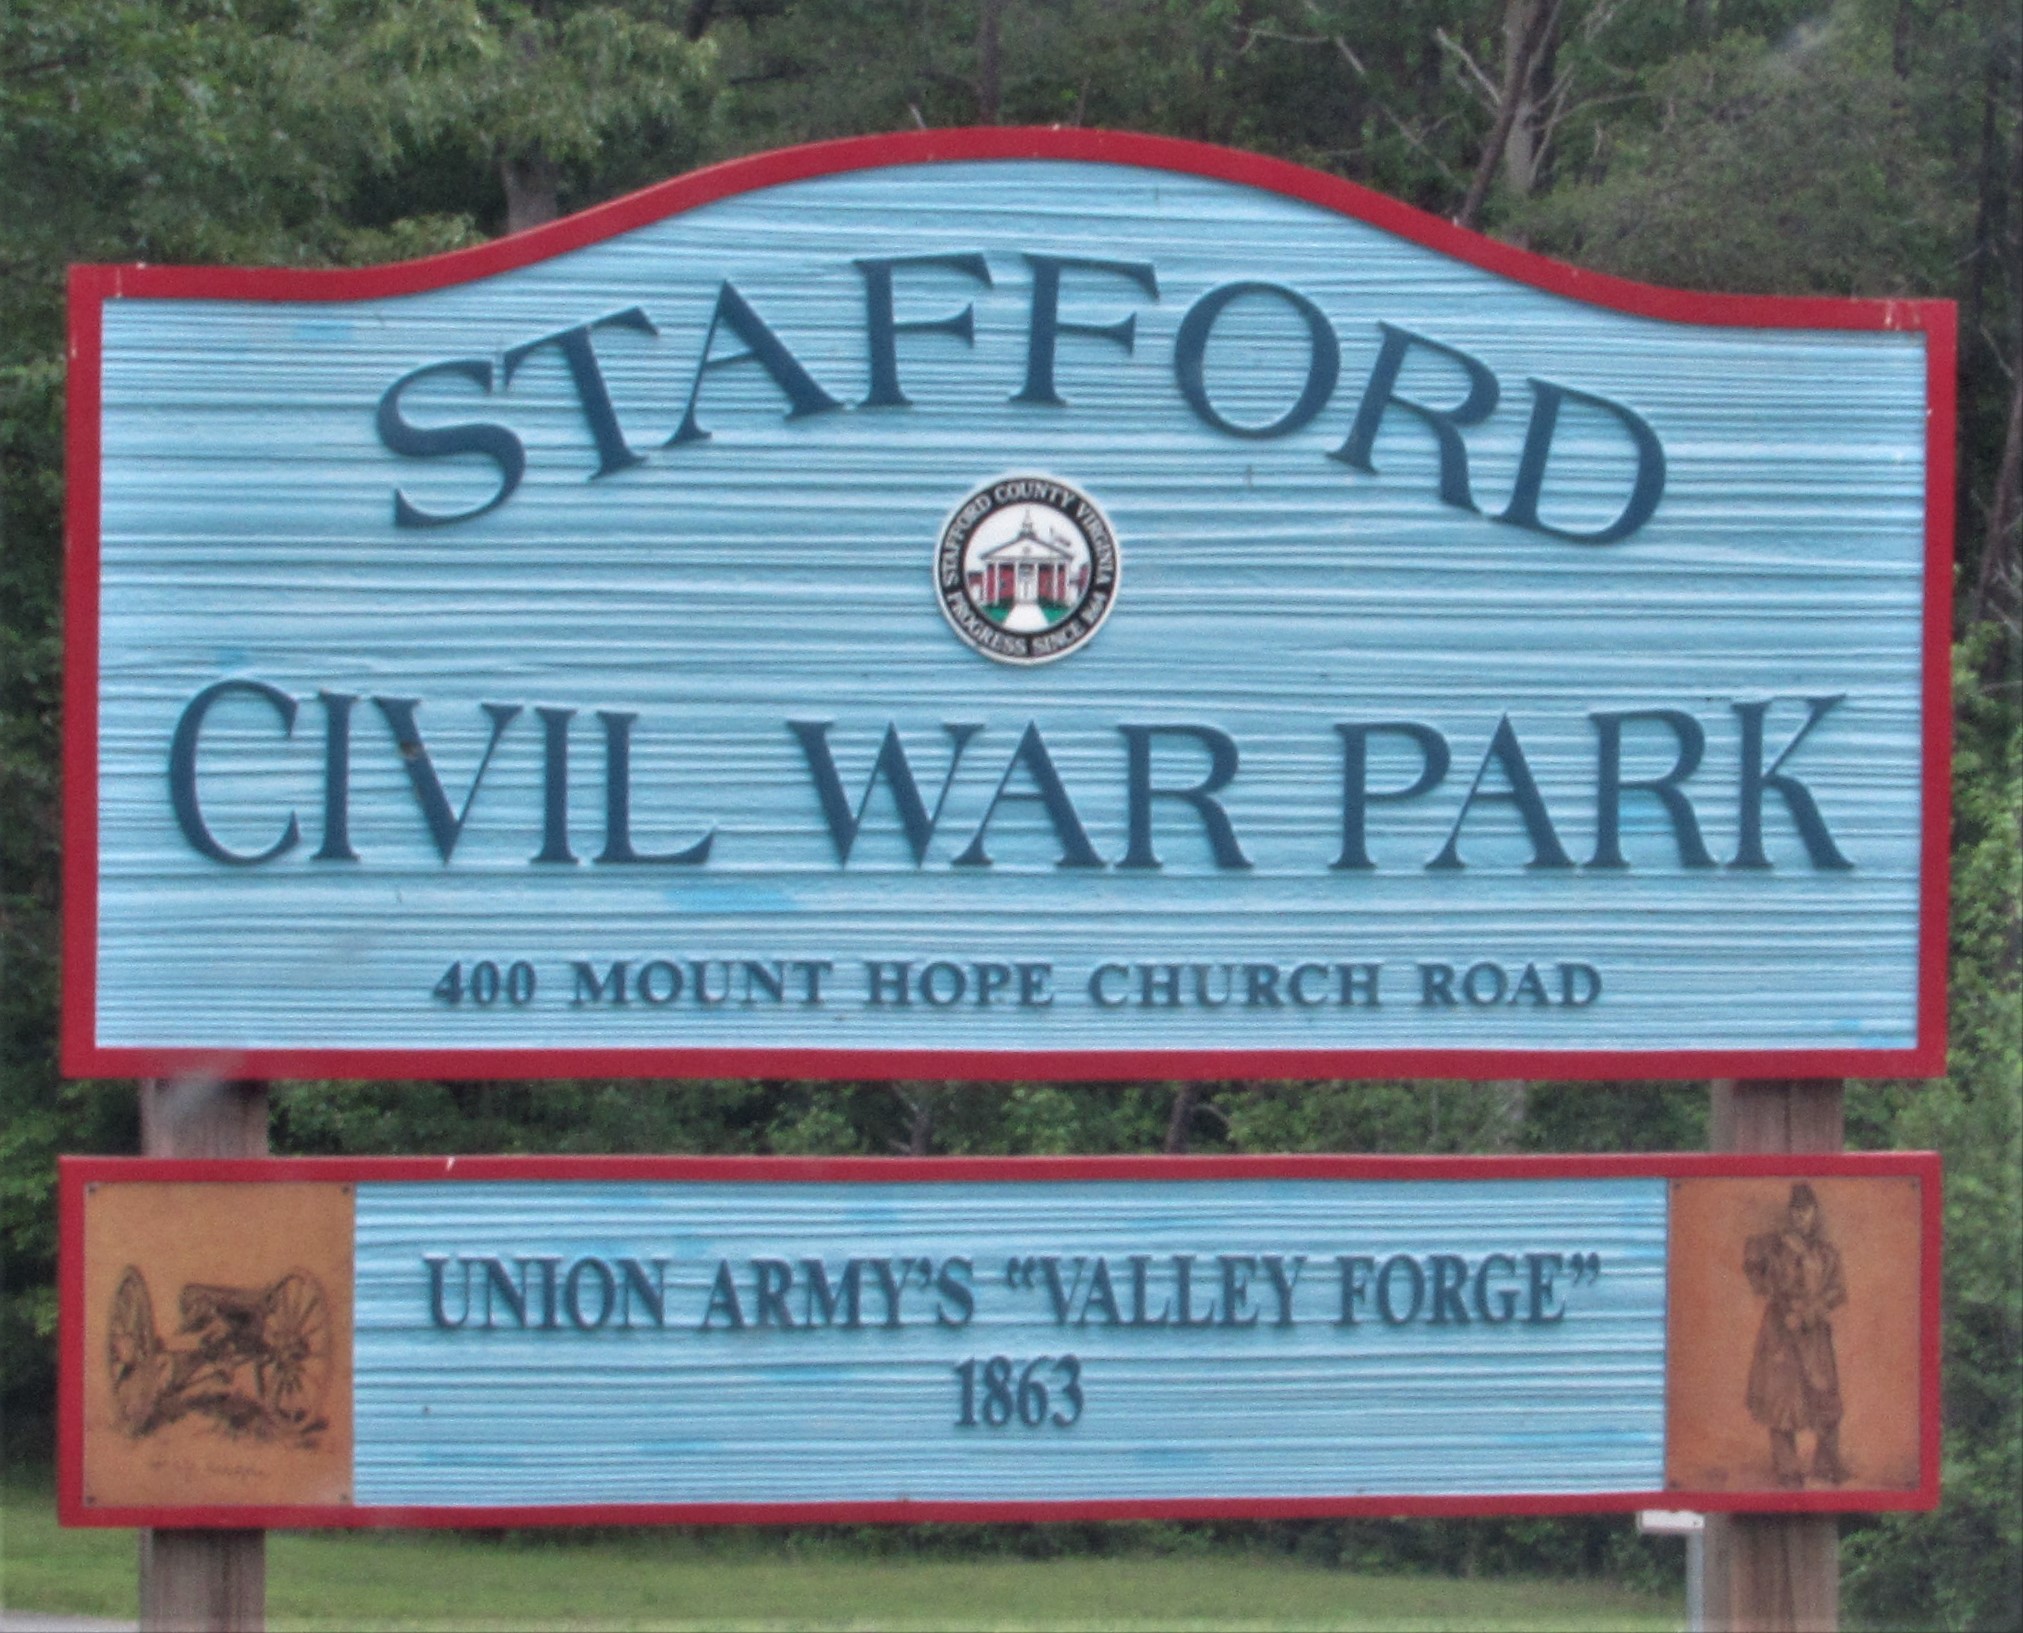 Stafford Civil War Park